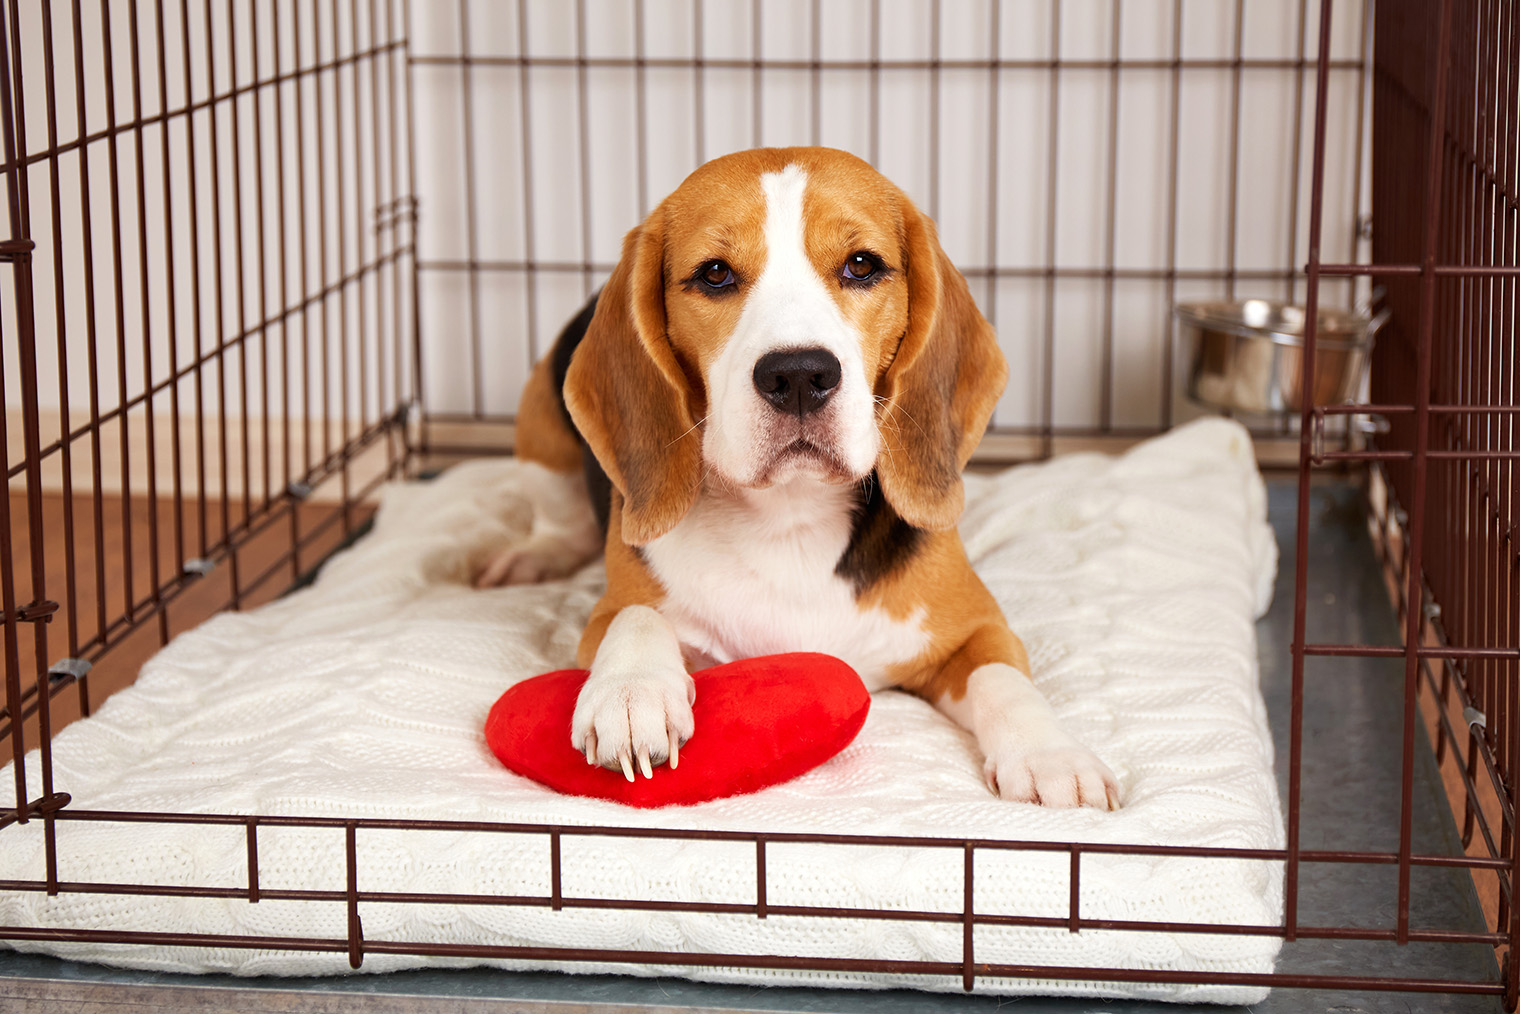 Если вы хотите организовать для собаки свое место в доме, выберите клетку побольше. Снимите дверцу или оставляйте ее открытой. Фотография: Viktorya Telminova / Shutterstock / FOTODOM